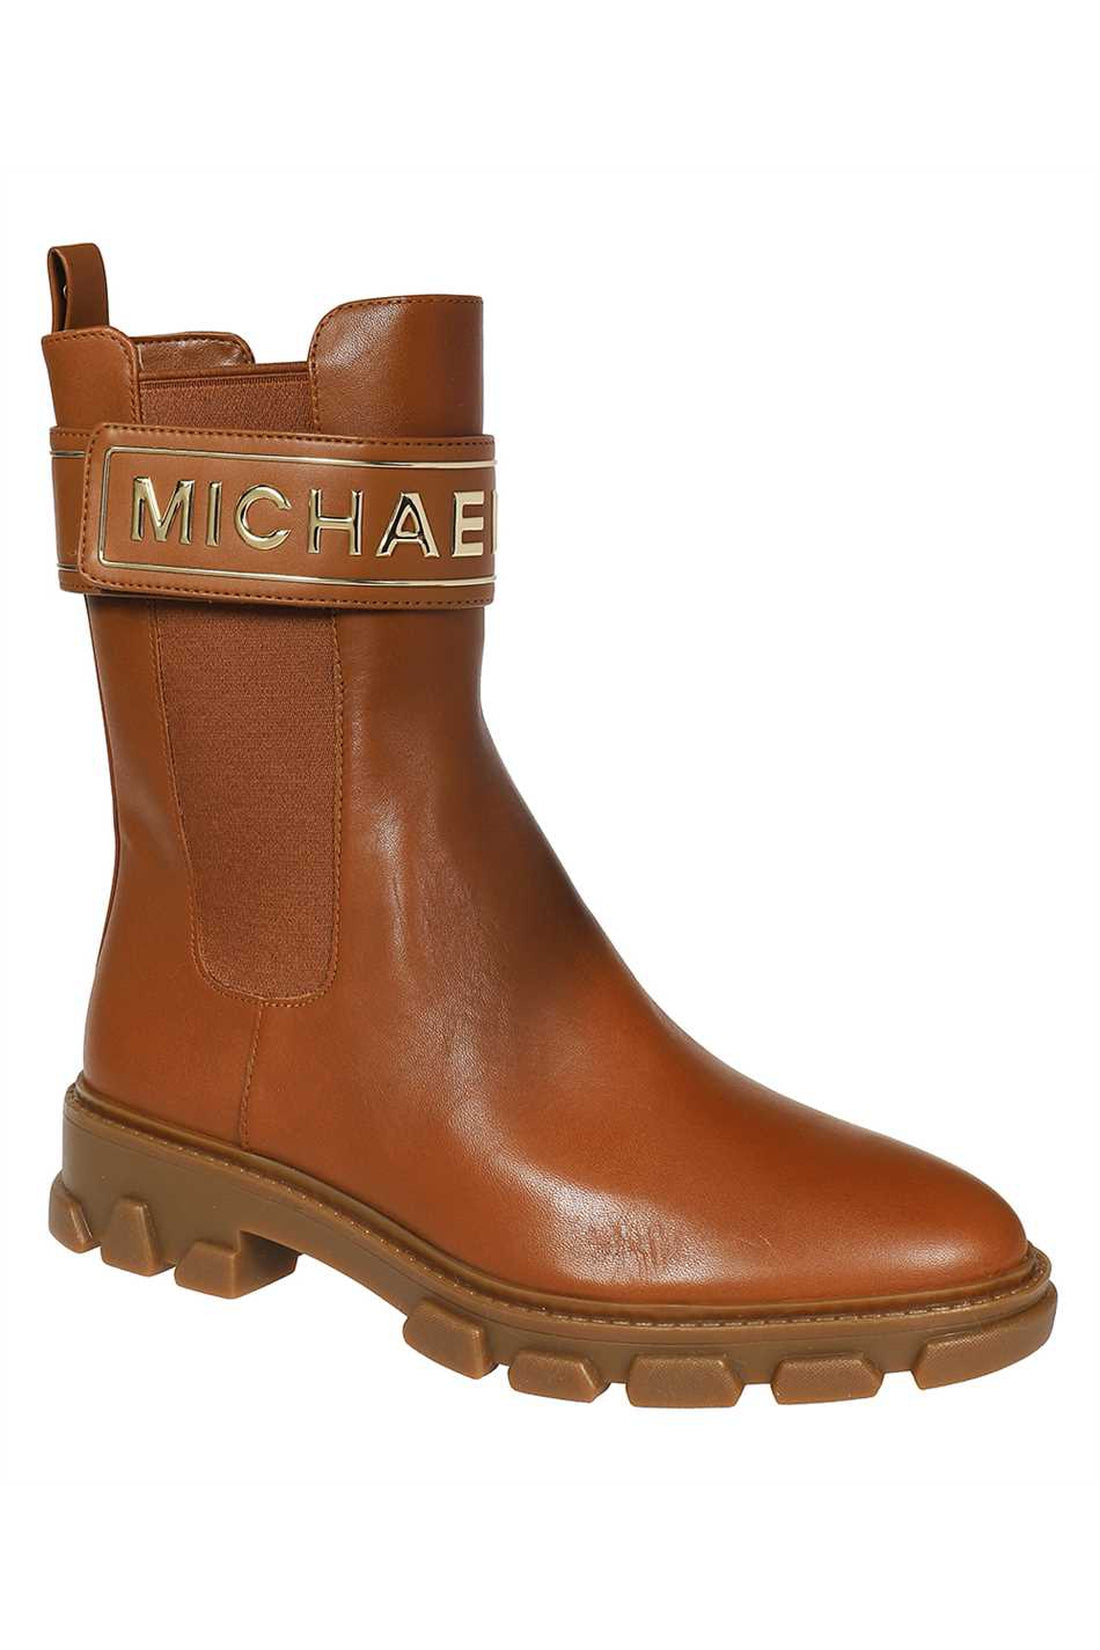 MICHAEL MICHAEL KORS-OUTLET-SALE-Leather ankle boots-ARCHIVIST